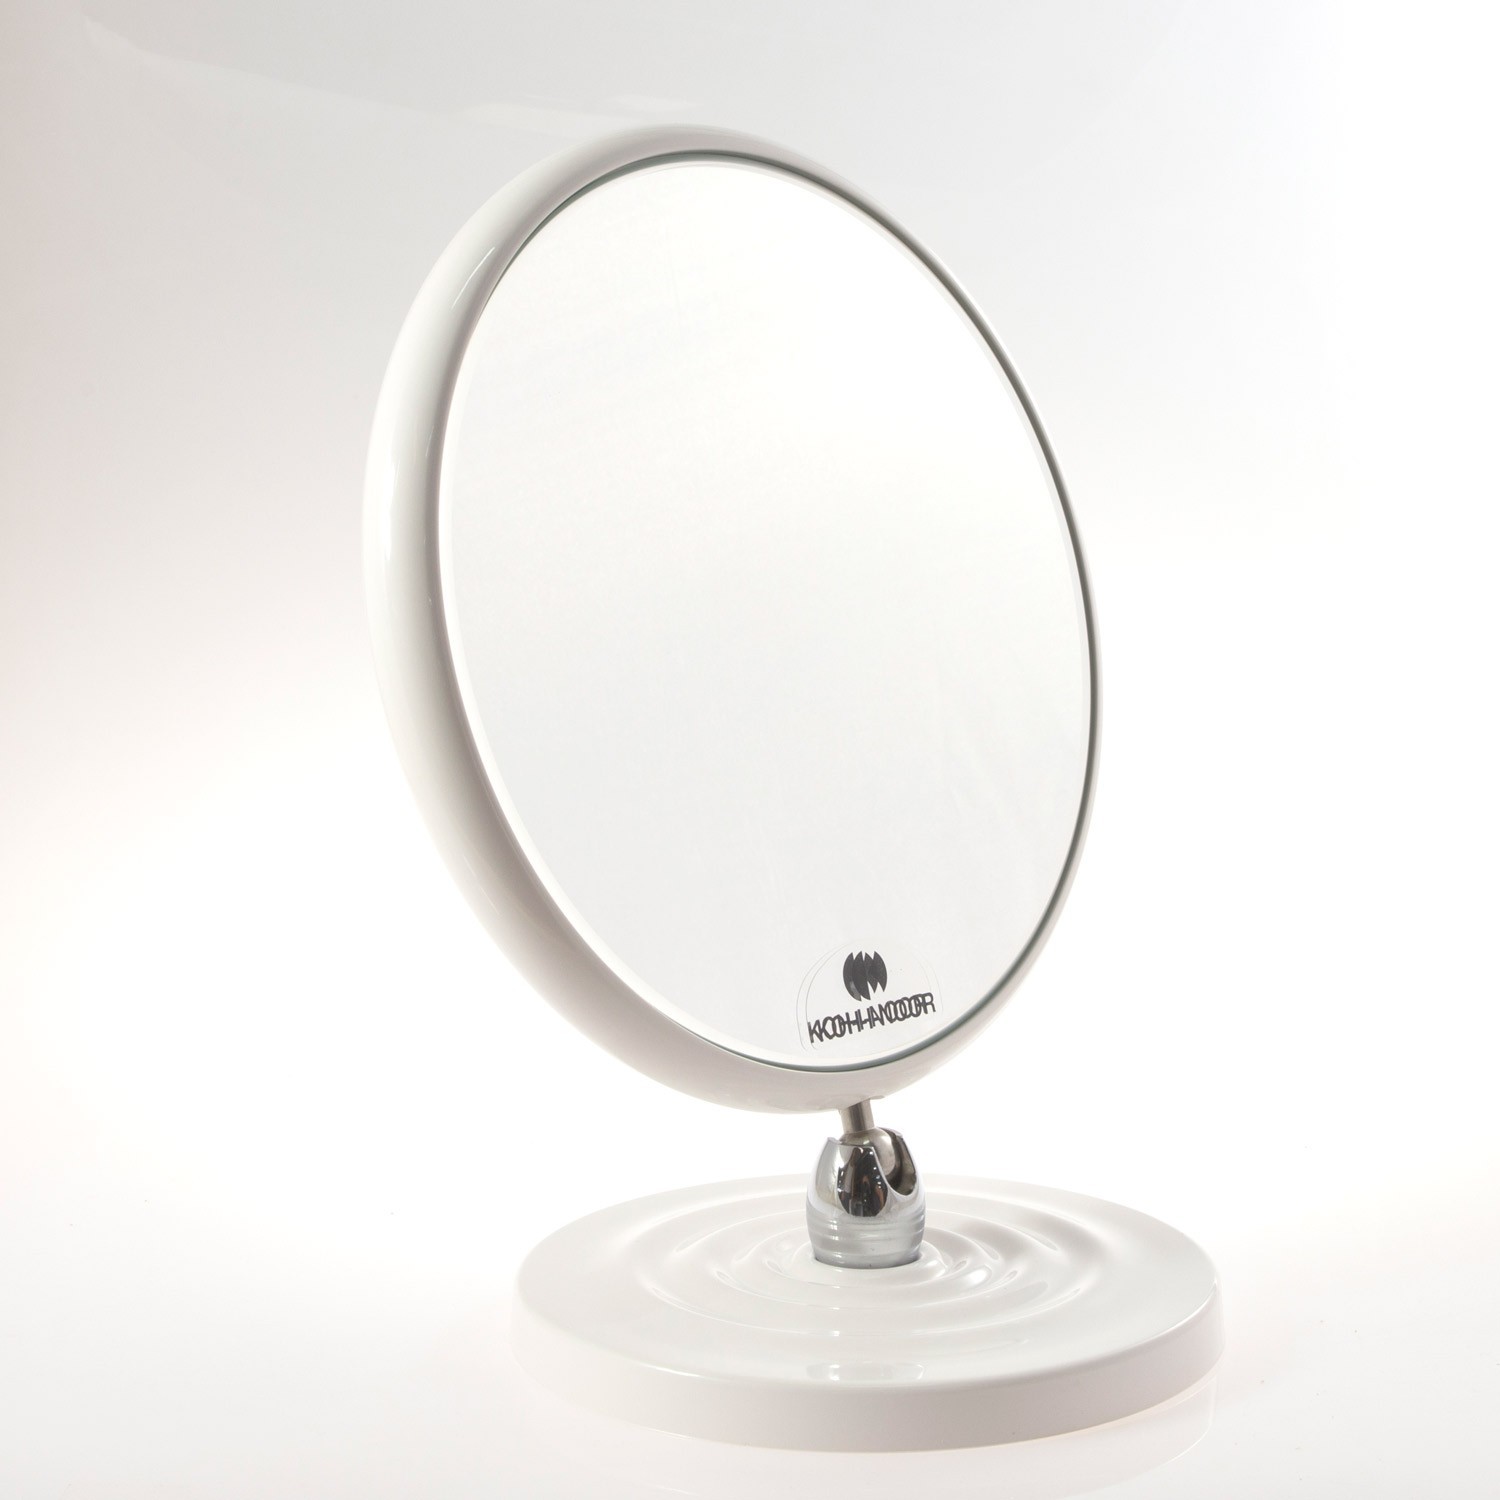 Specchio ingranditore bifacciale da tavolo (Ingrandimento x6) bianco ø18cm.